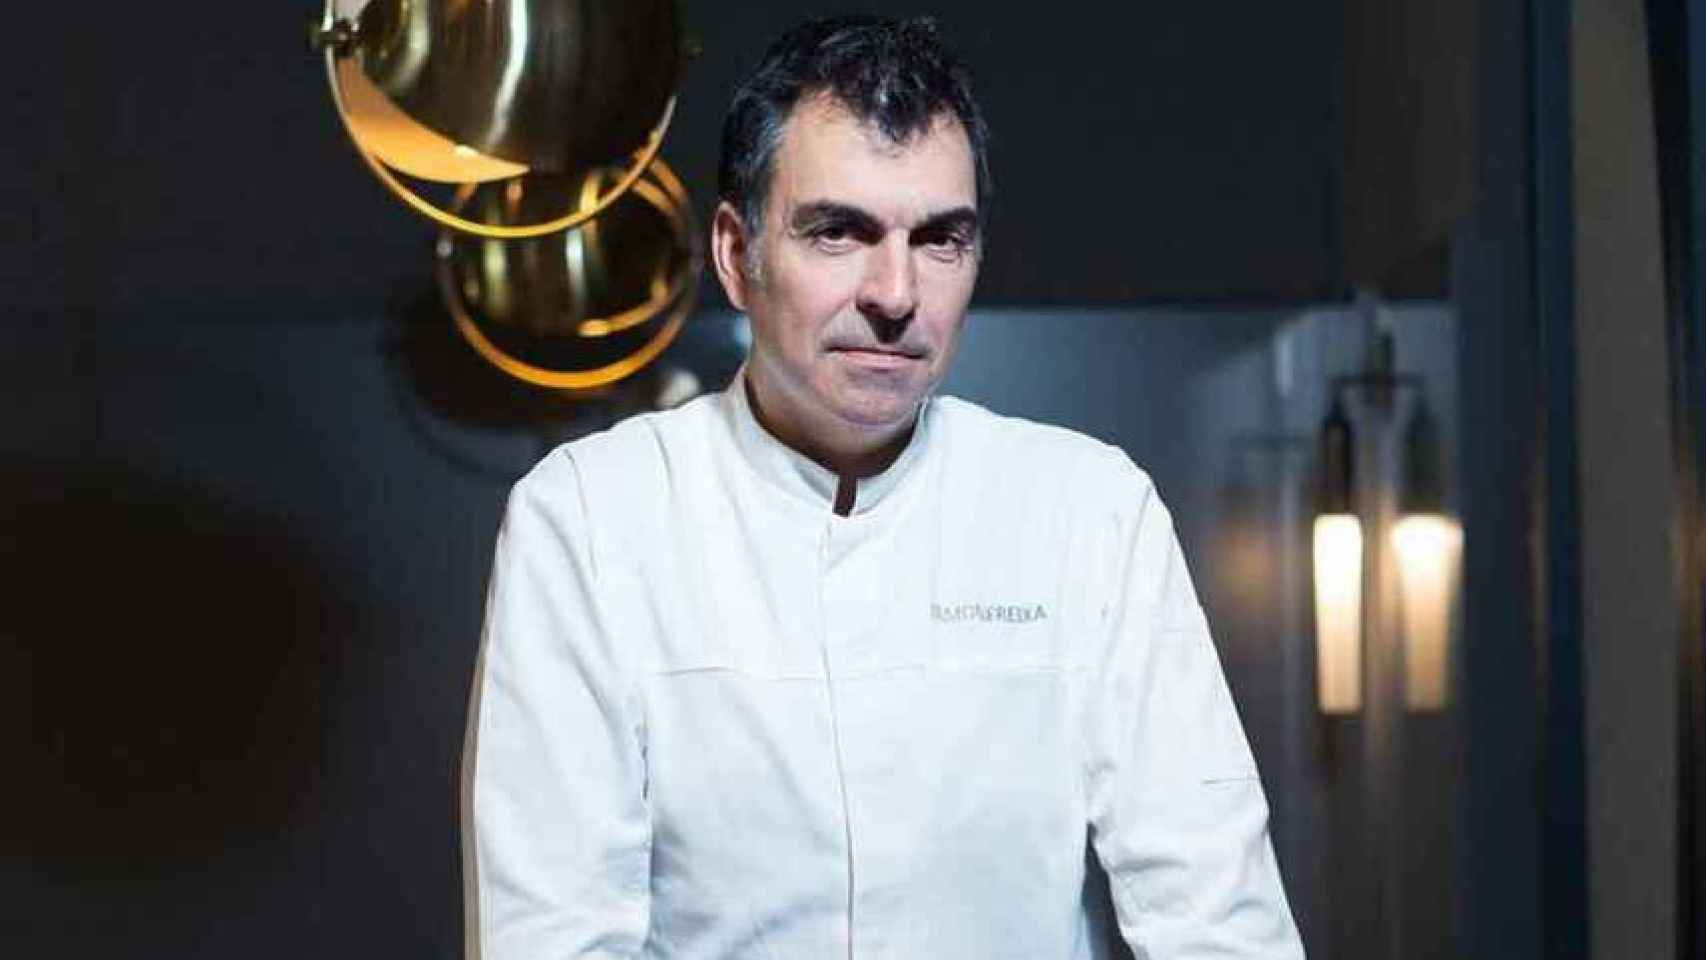 Quién es Ramón Freixa, el chef invitado esta tarde a ‘Pasapalabra’